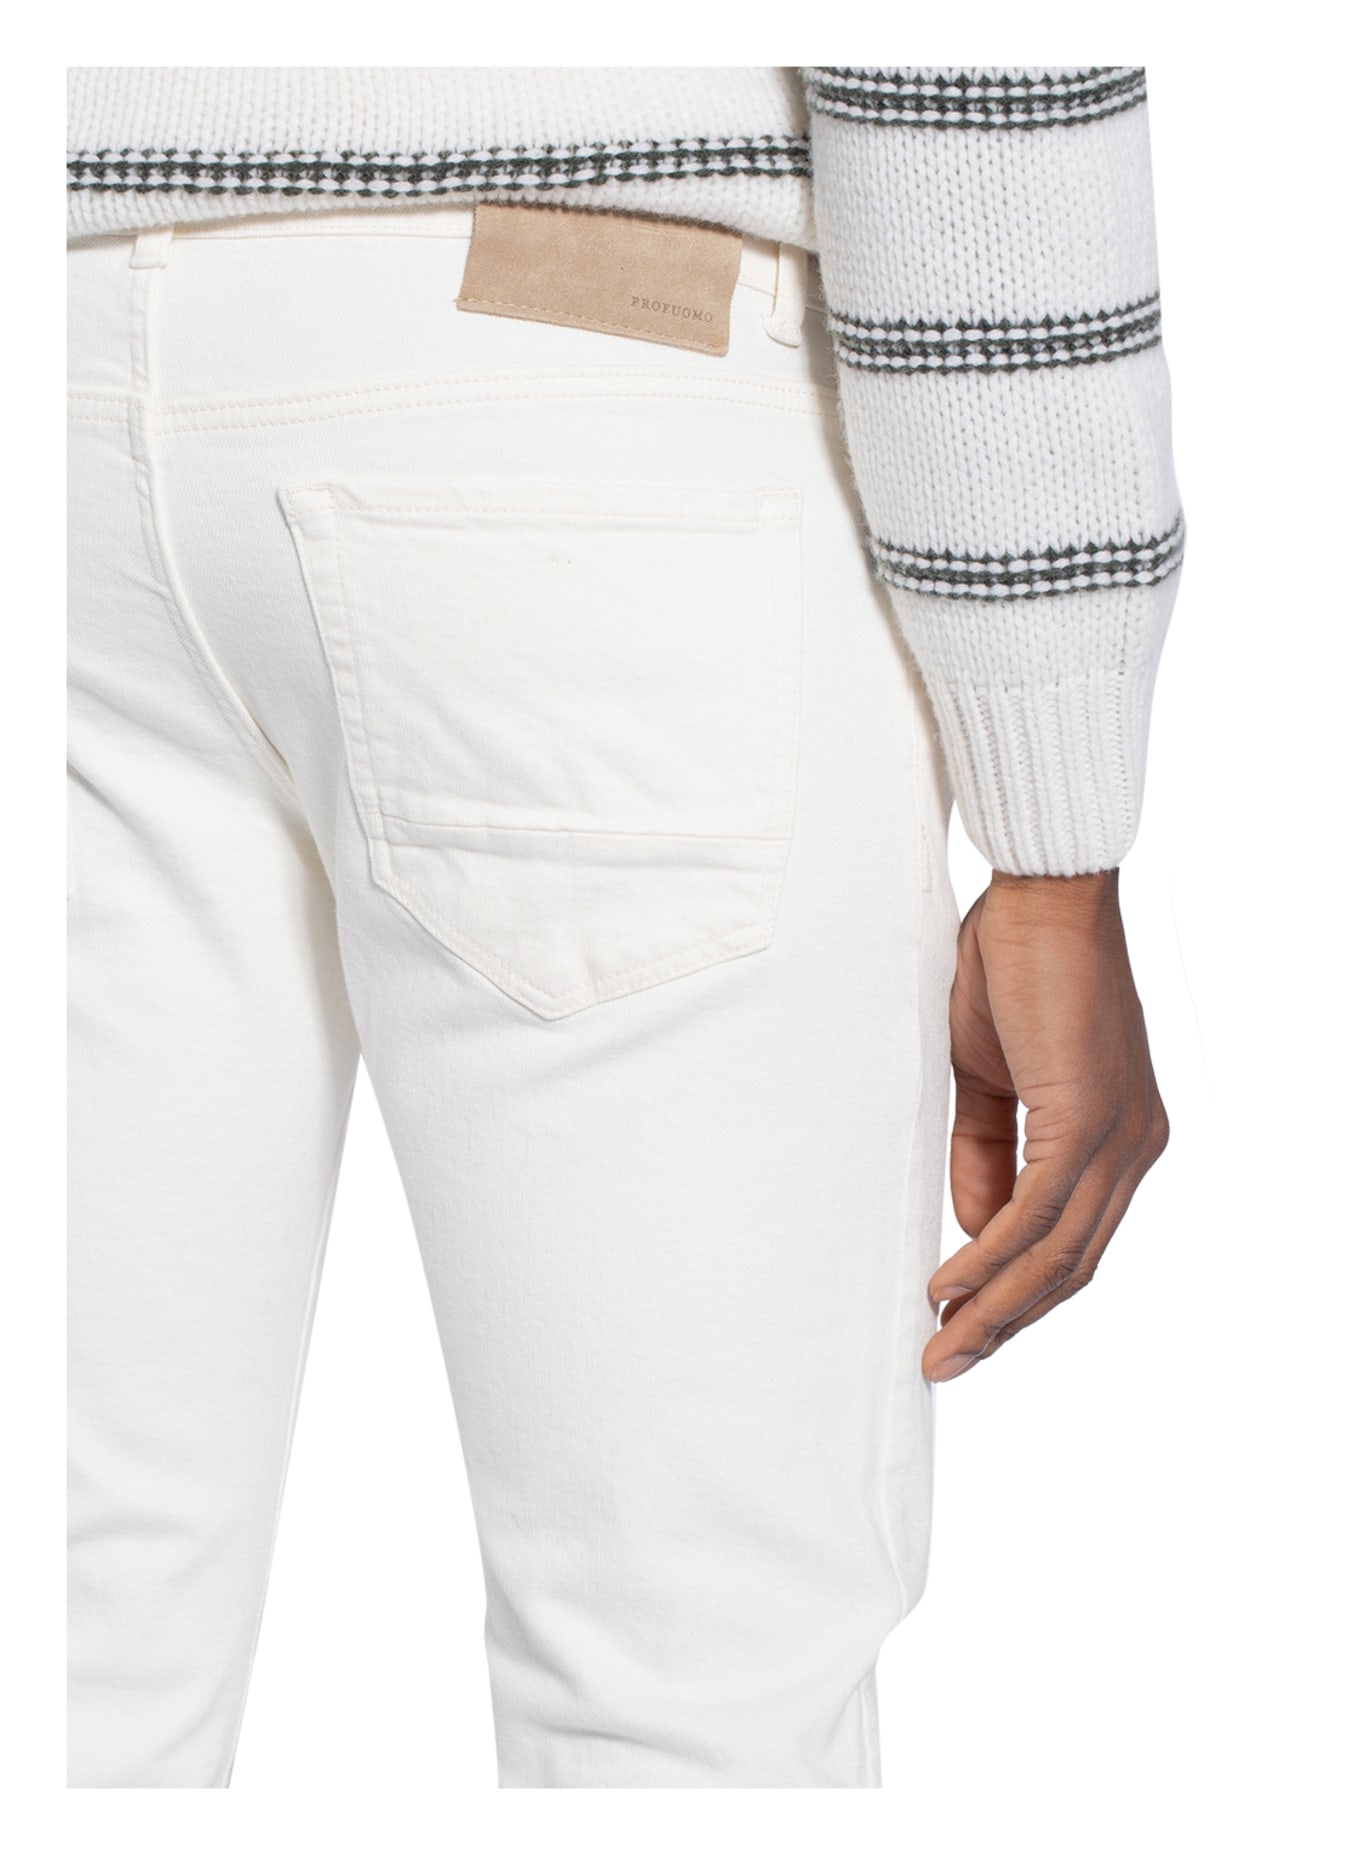 PROFUOMO Jeans slim fit , Color: E Off white (Image 5)